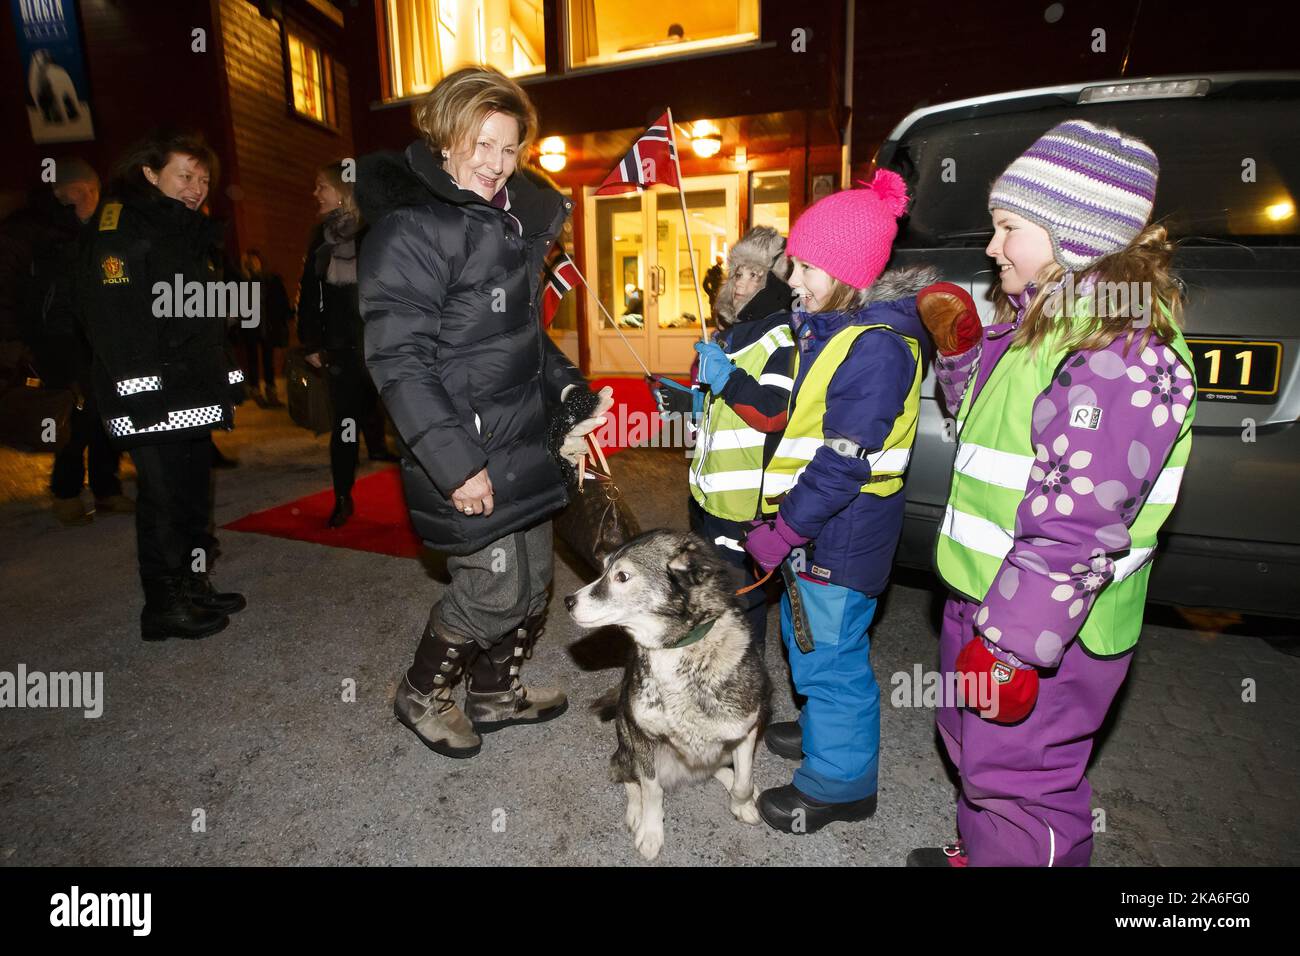 LONGYEARBYEN, Norvegia 20160107. La regina Sonja sta visitando Longyearbyen su Svalbard per esaminare i danni dopo la valanga 19th dicembre 2015 che ha ucciso due persone. La Regina saluta Embla, Iben e Synniva quando arriva all'Hotel Spitsbergen Funken. Foto: Heiko Junge / NTB scanpix Foto Stock